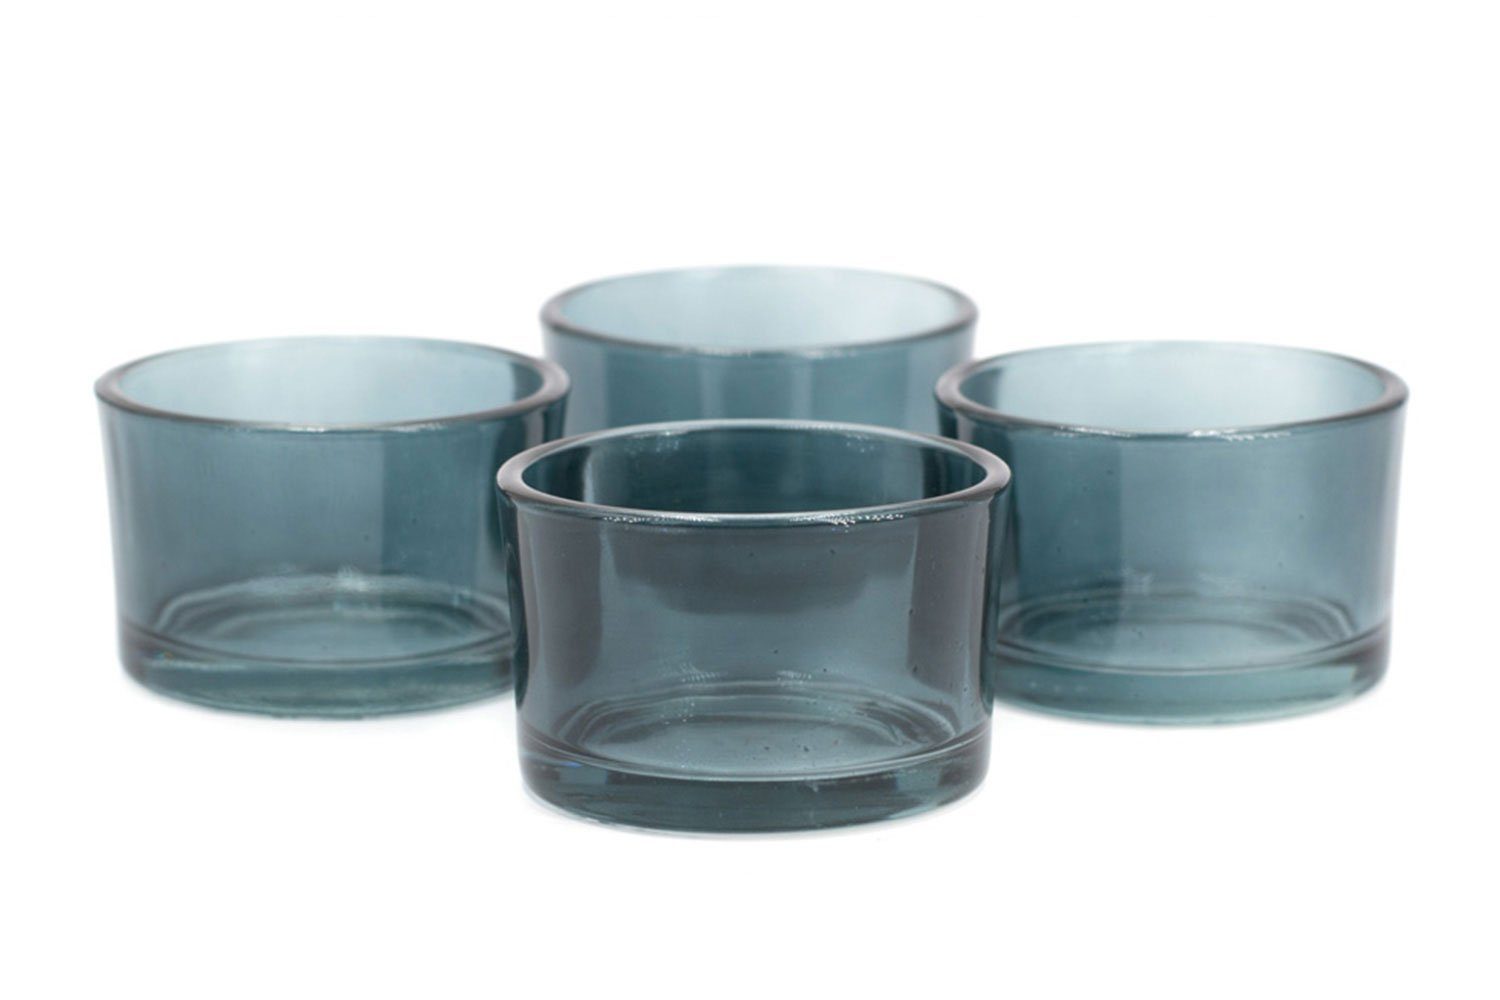 51x33mm 4er Teelichtgläser Creativery silber / klein Set grau Teelichthalter,